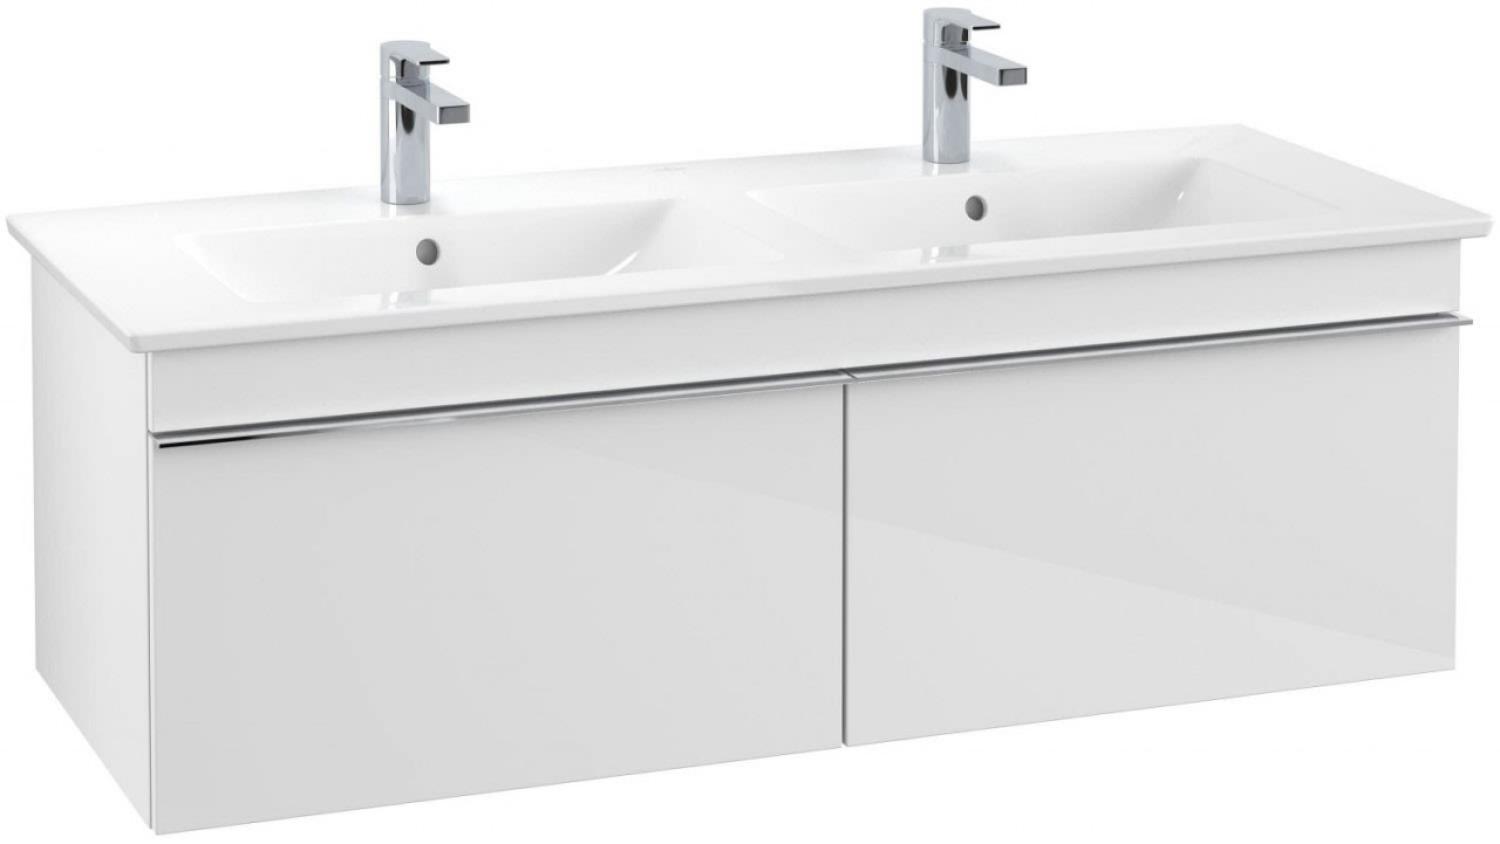 Villeroy & Boch VENTICELLO Waschtischunterschrank 125 cm breit, Weiß, Griff Chrom Bild 1